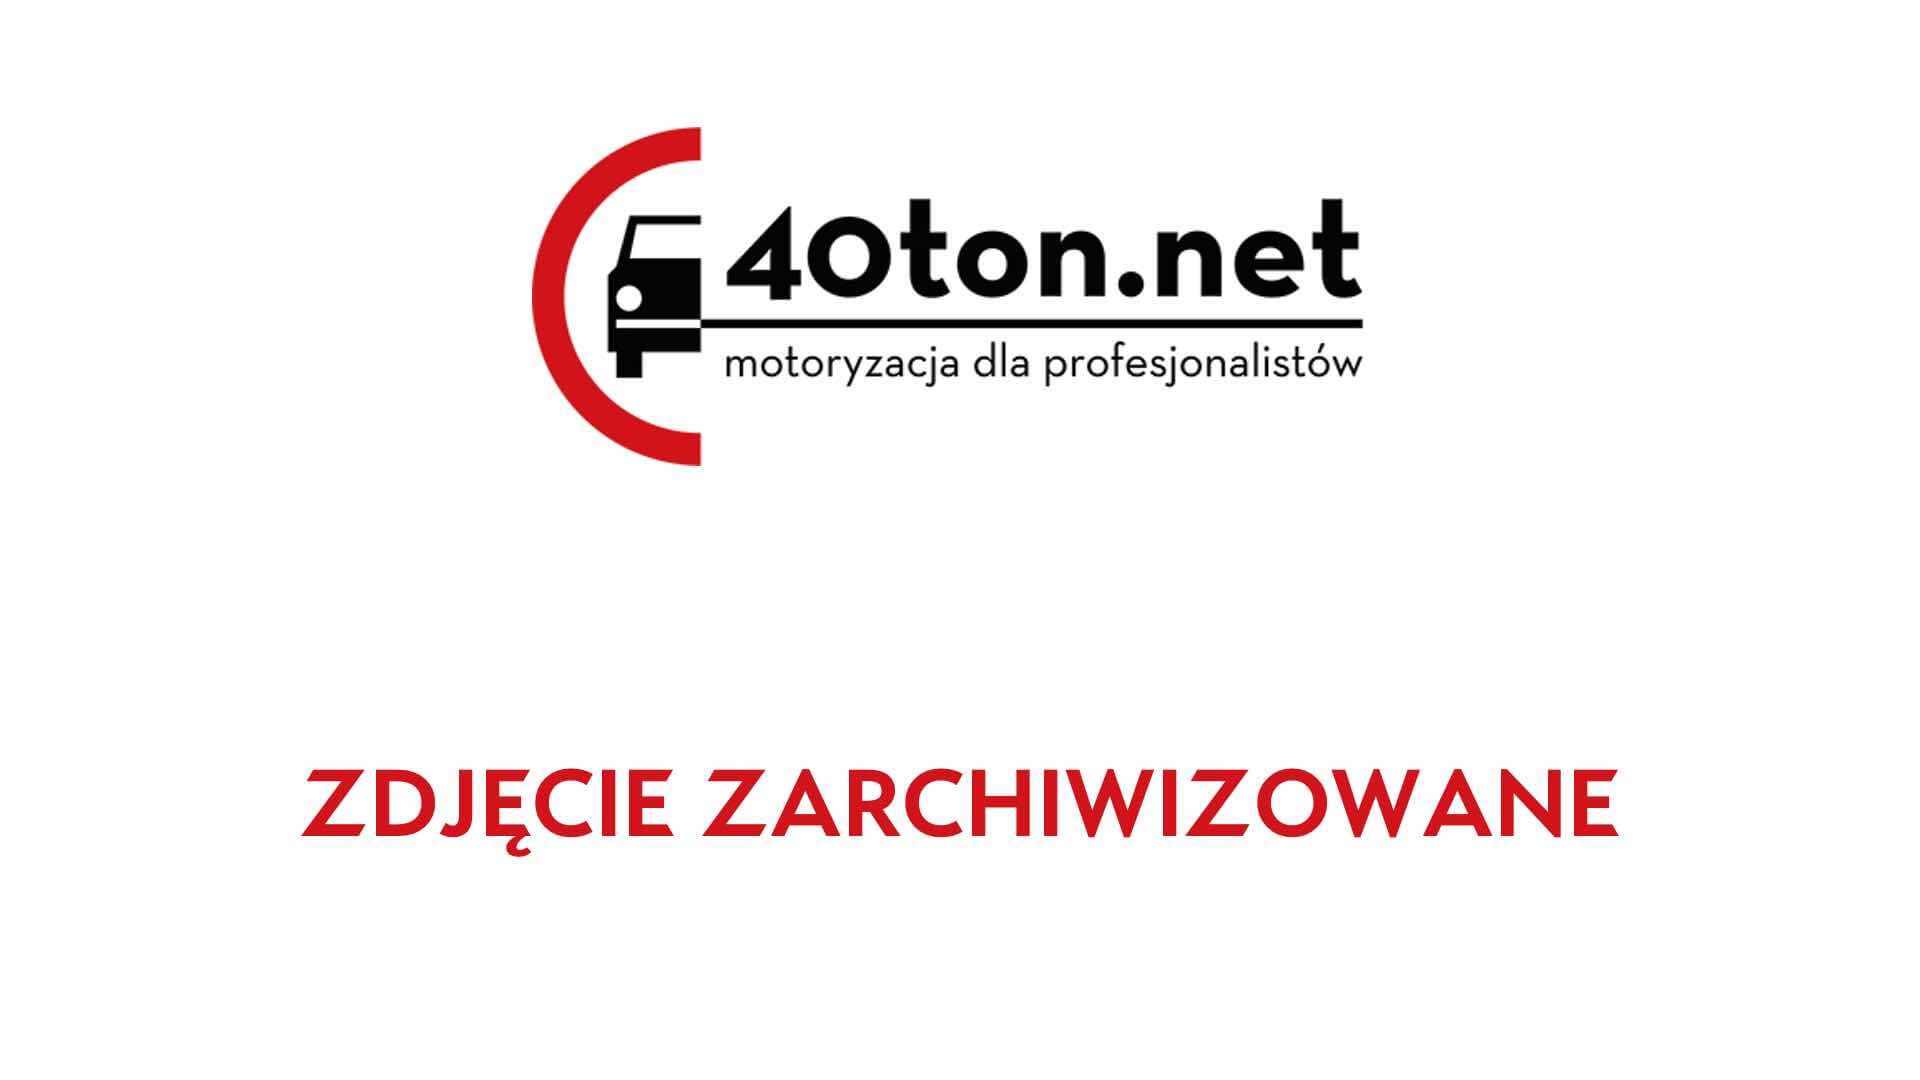 a2_kontrola_skarbowa_autostrada_ciezarowki_cysterny